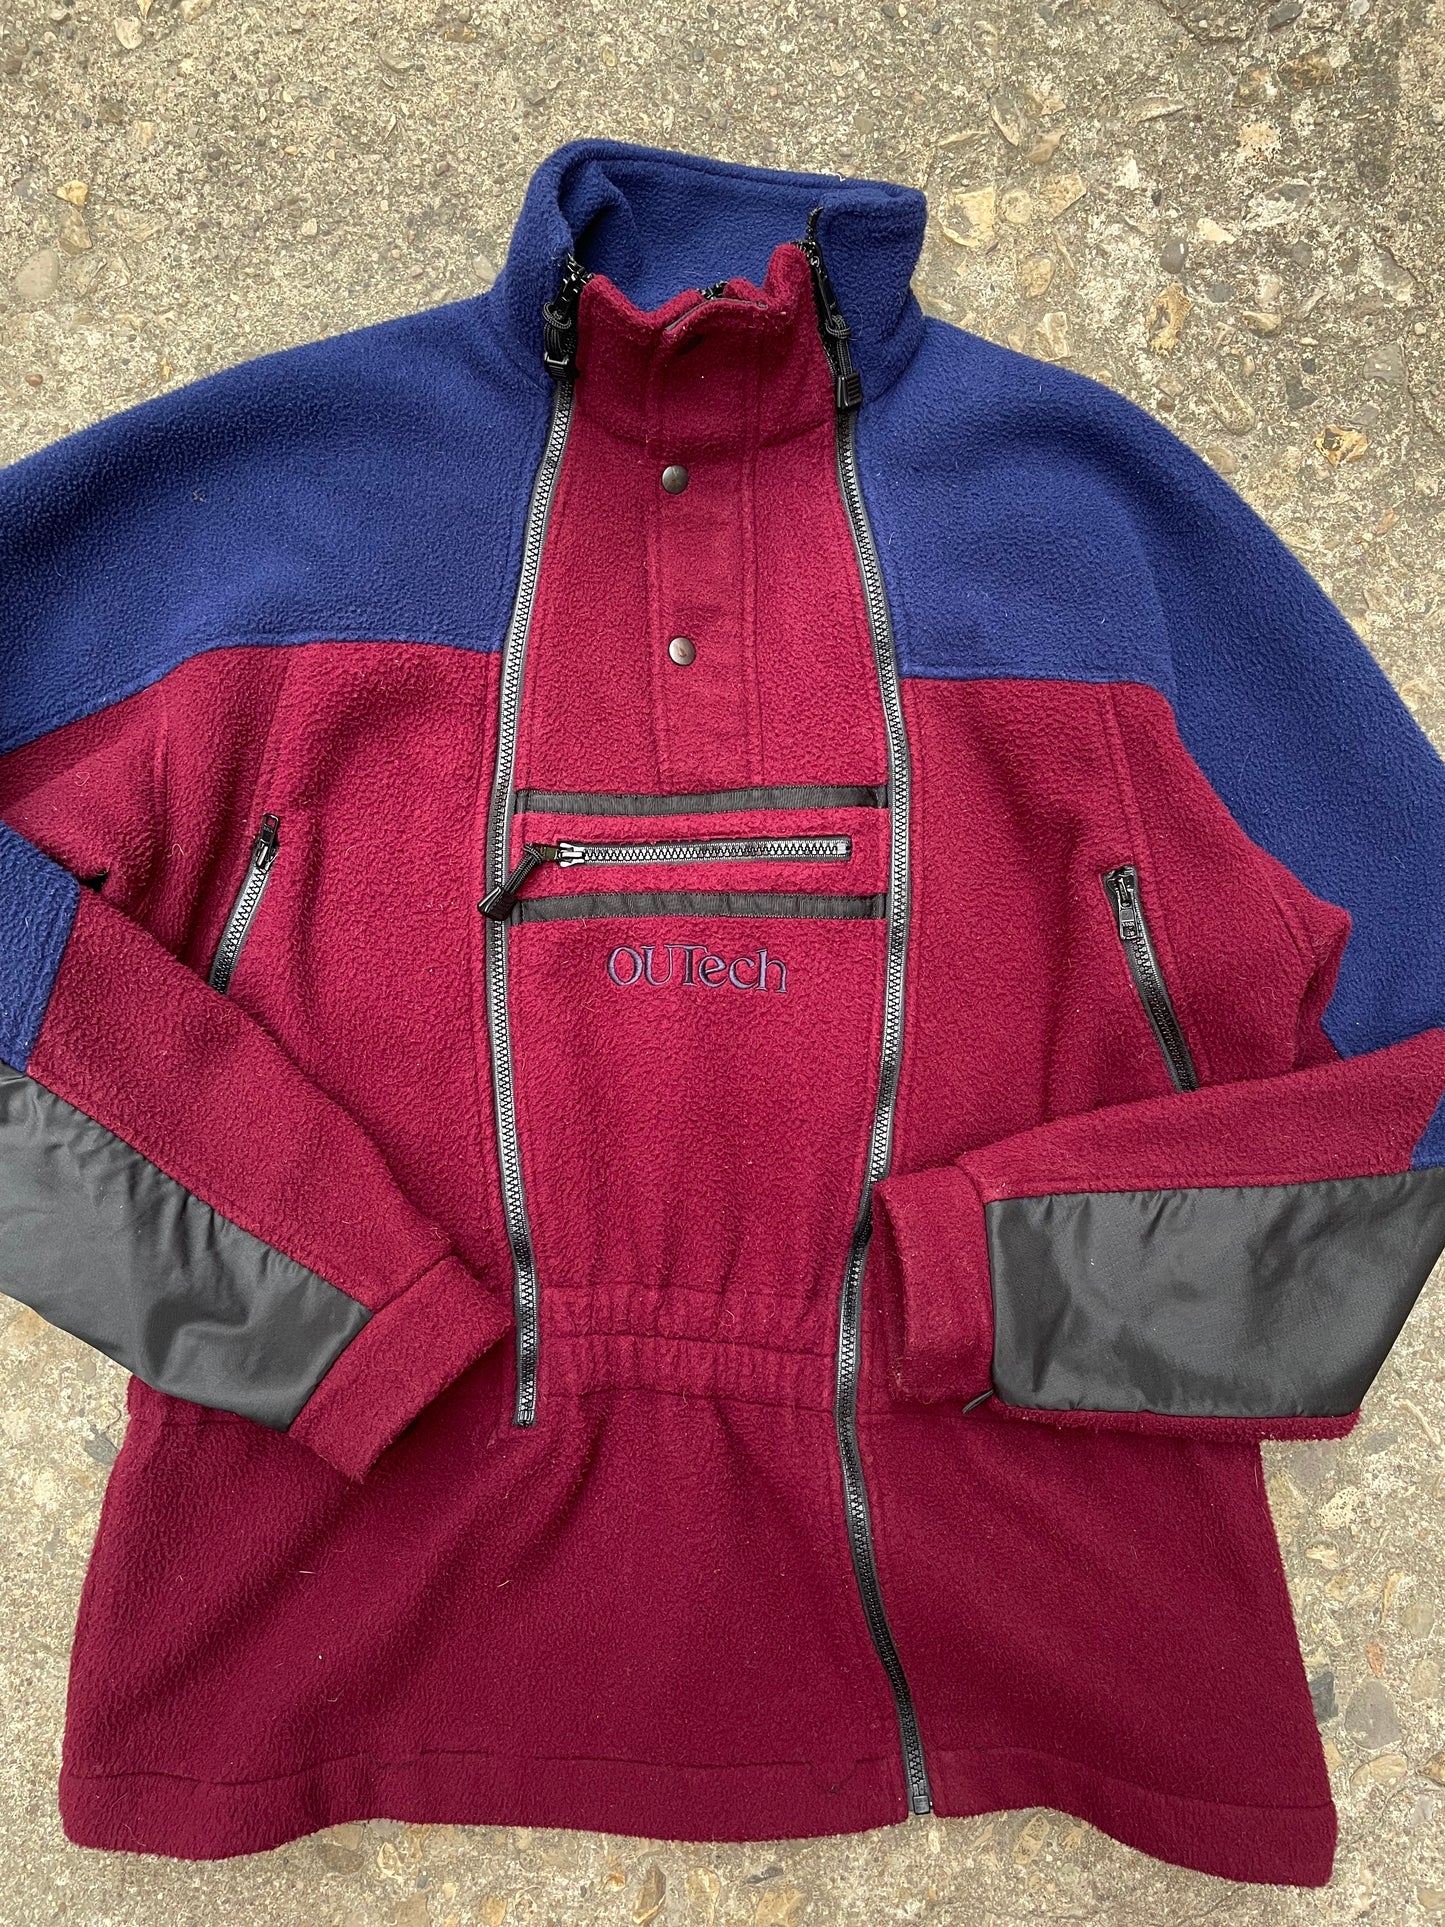 1990's OUTech Asymmetrical Zip Fleece - XL